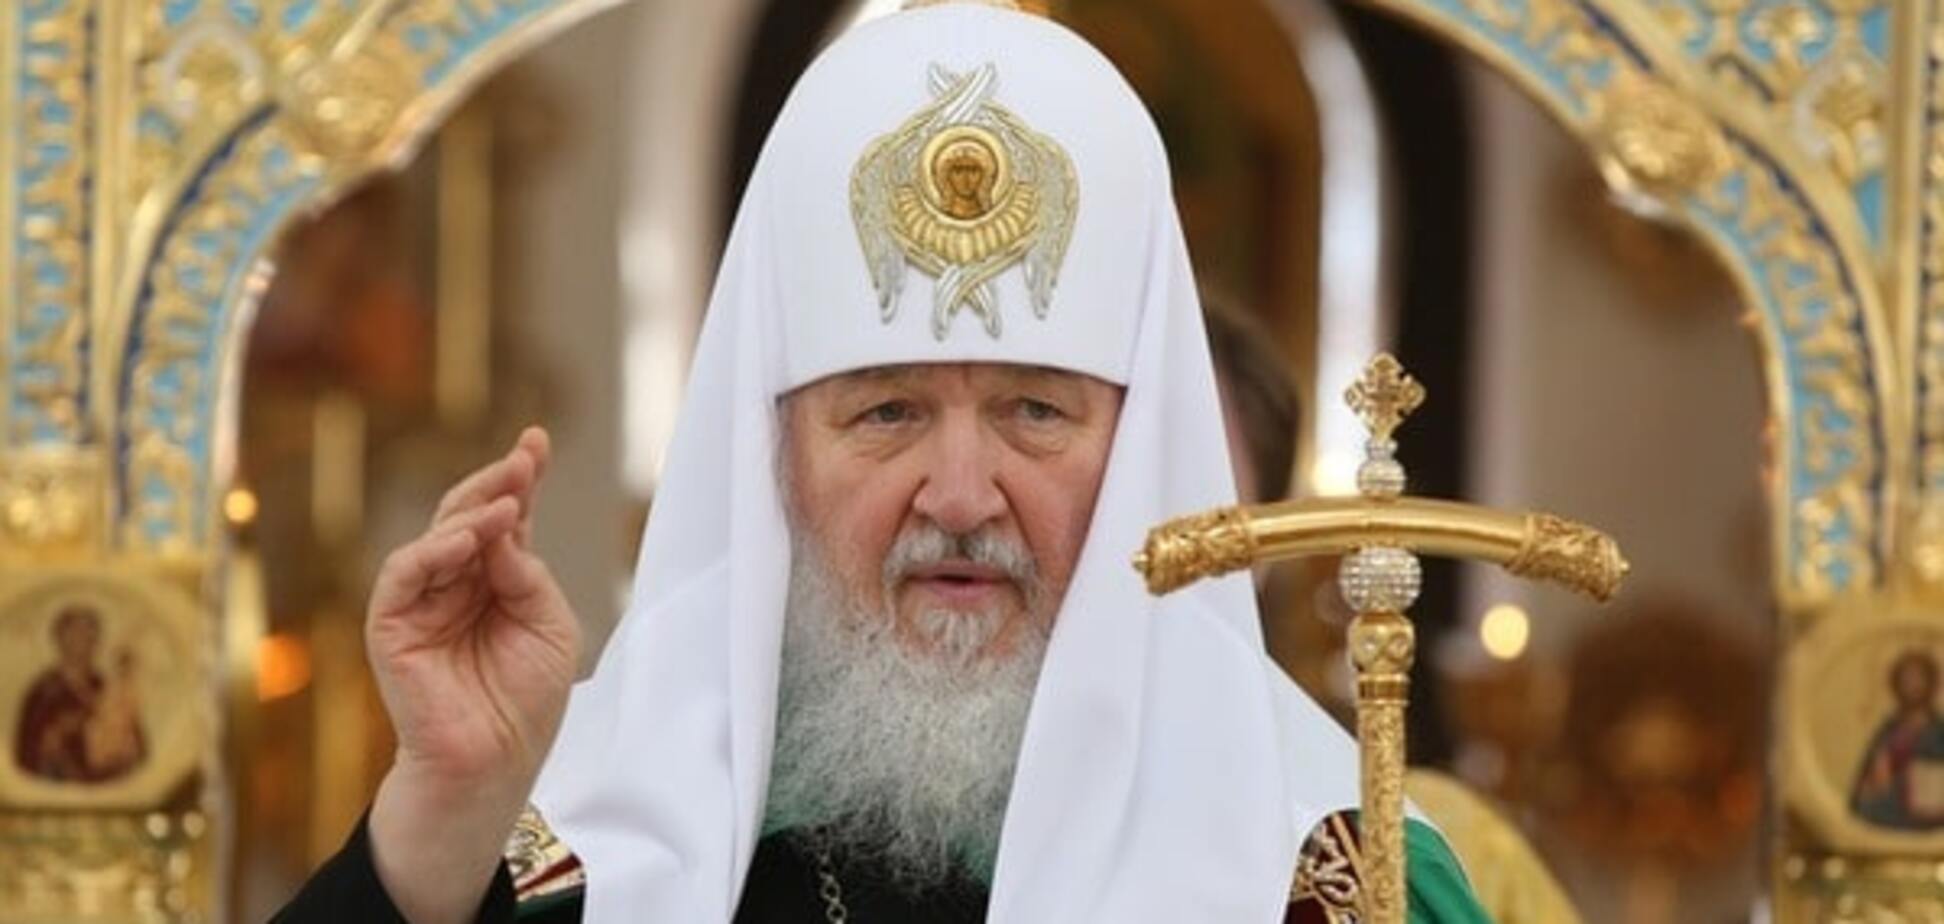 Московская патриархия незаконно удерживает власть над православными в Украине - эксперт